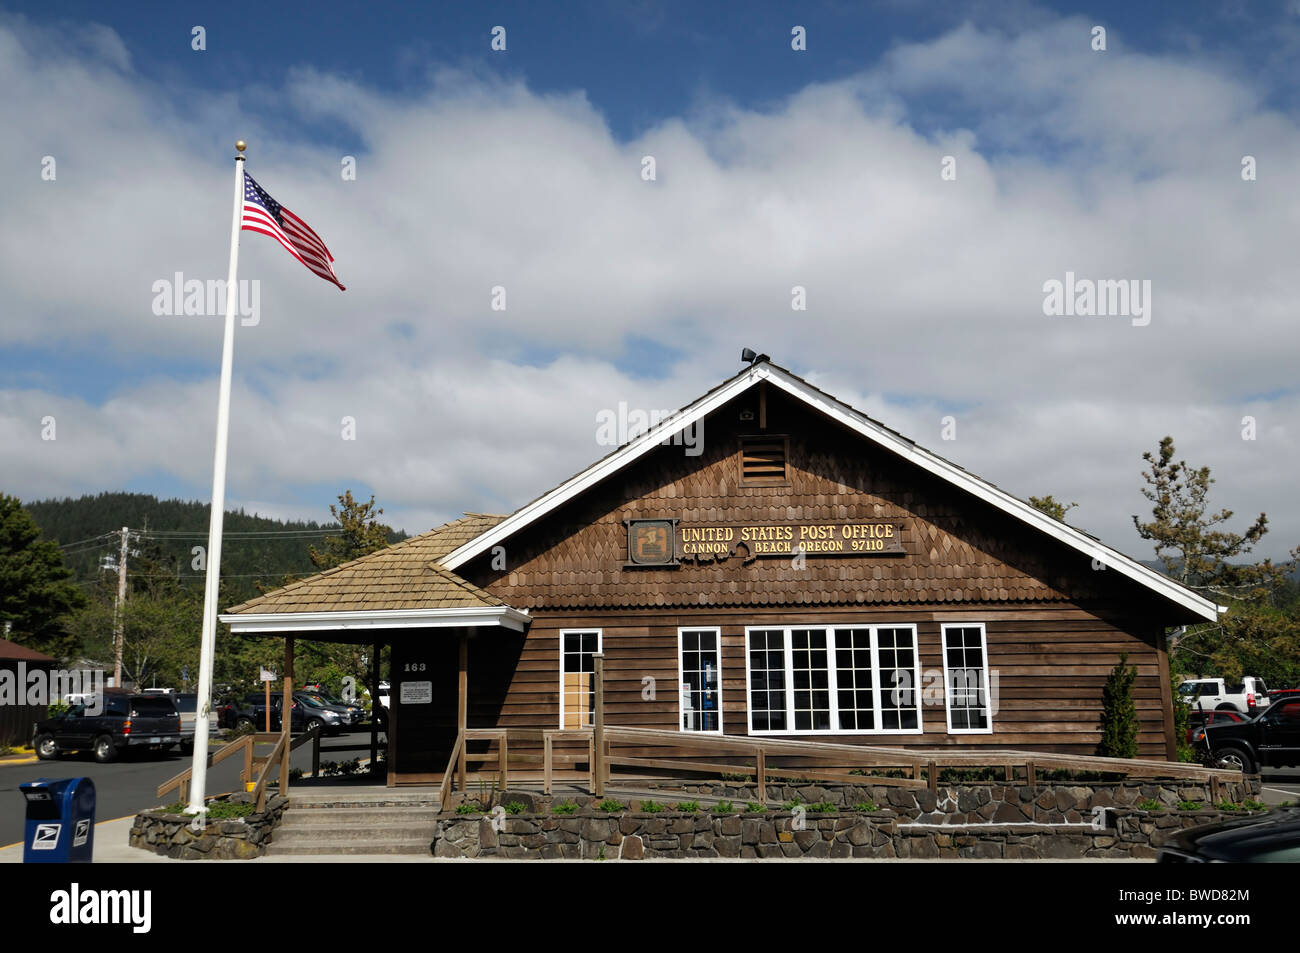 Vereinigte Staaten Postservice Postamt USPO Bau Büro Kanone Strand Oregon Pacific Northwest USA Entsendung Lieferung Stockfoto